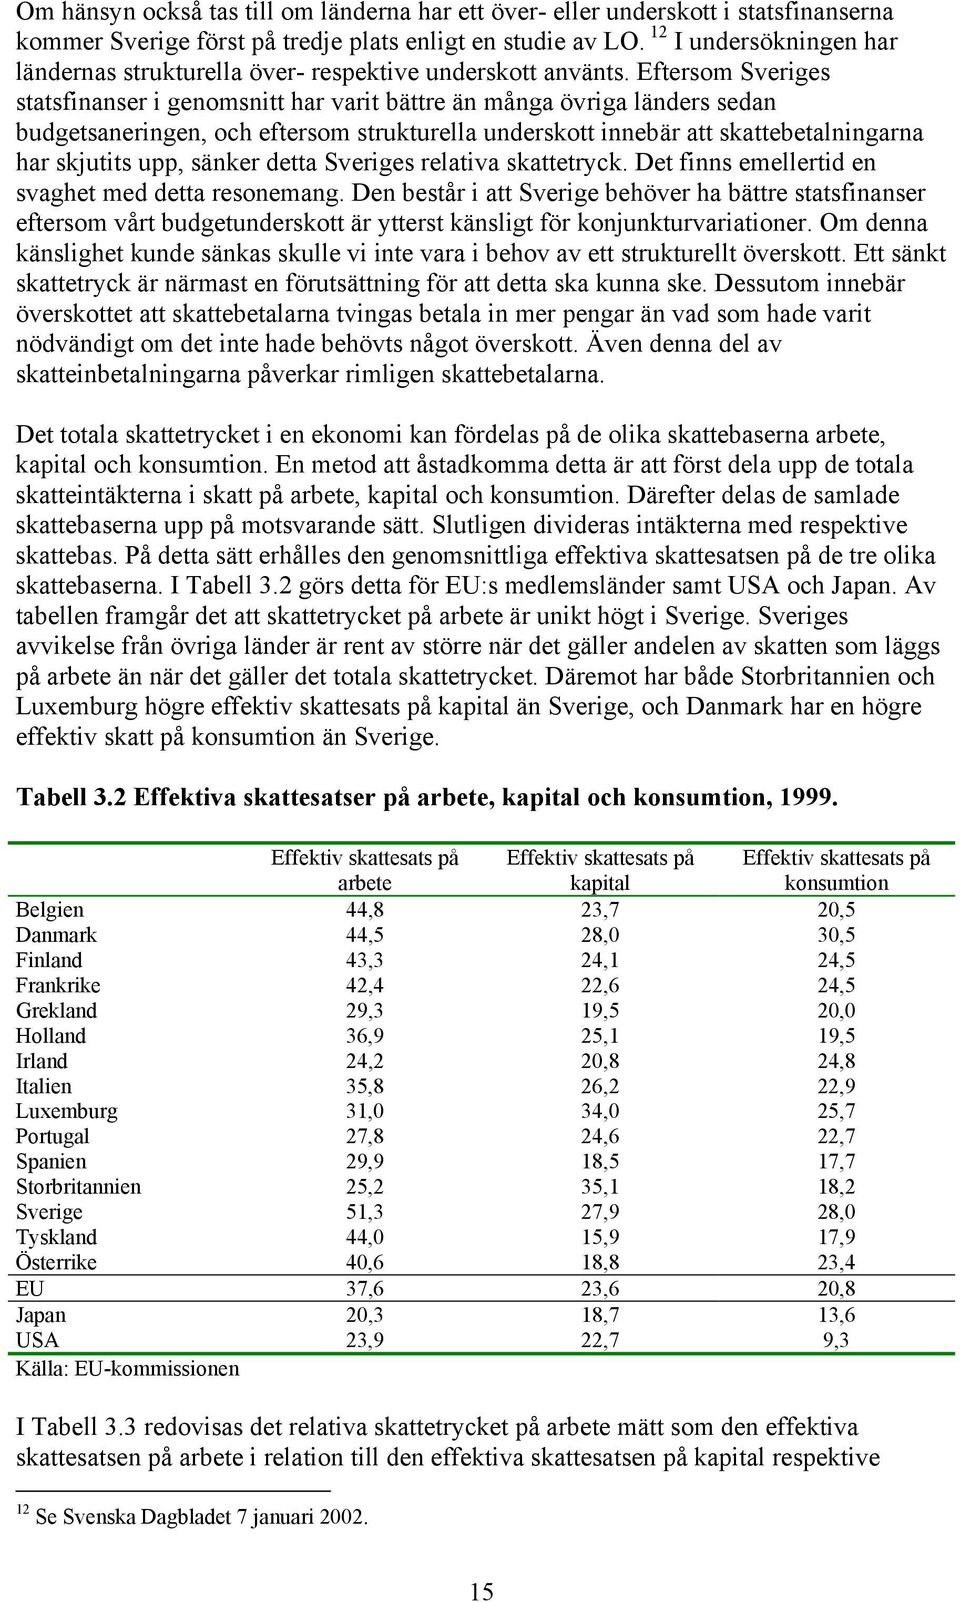 Eftersom Sveriges statsfinanser i genomsnitt har varit bättre än många övriga länders sedan budgetsaneringen, och eftersom strukturella underskott innebär att skattebetalningarna har skjutits upp,